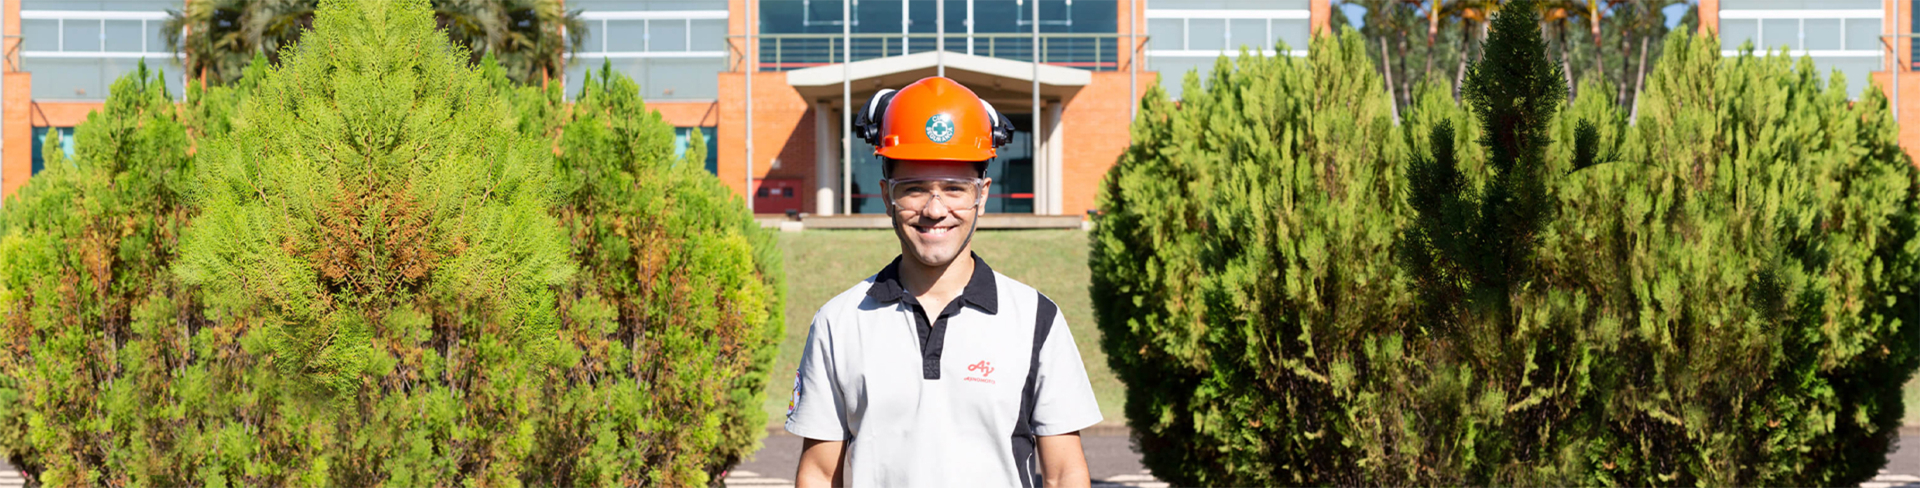 Imagem de um trabalhador vestindo uma camiseta com o logo da Ajinomoto e um capacete laranja em frente a um prédio